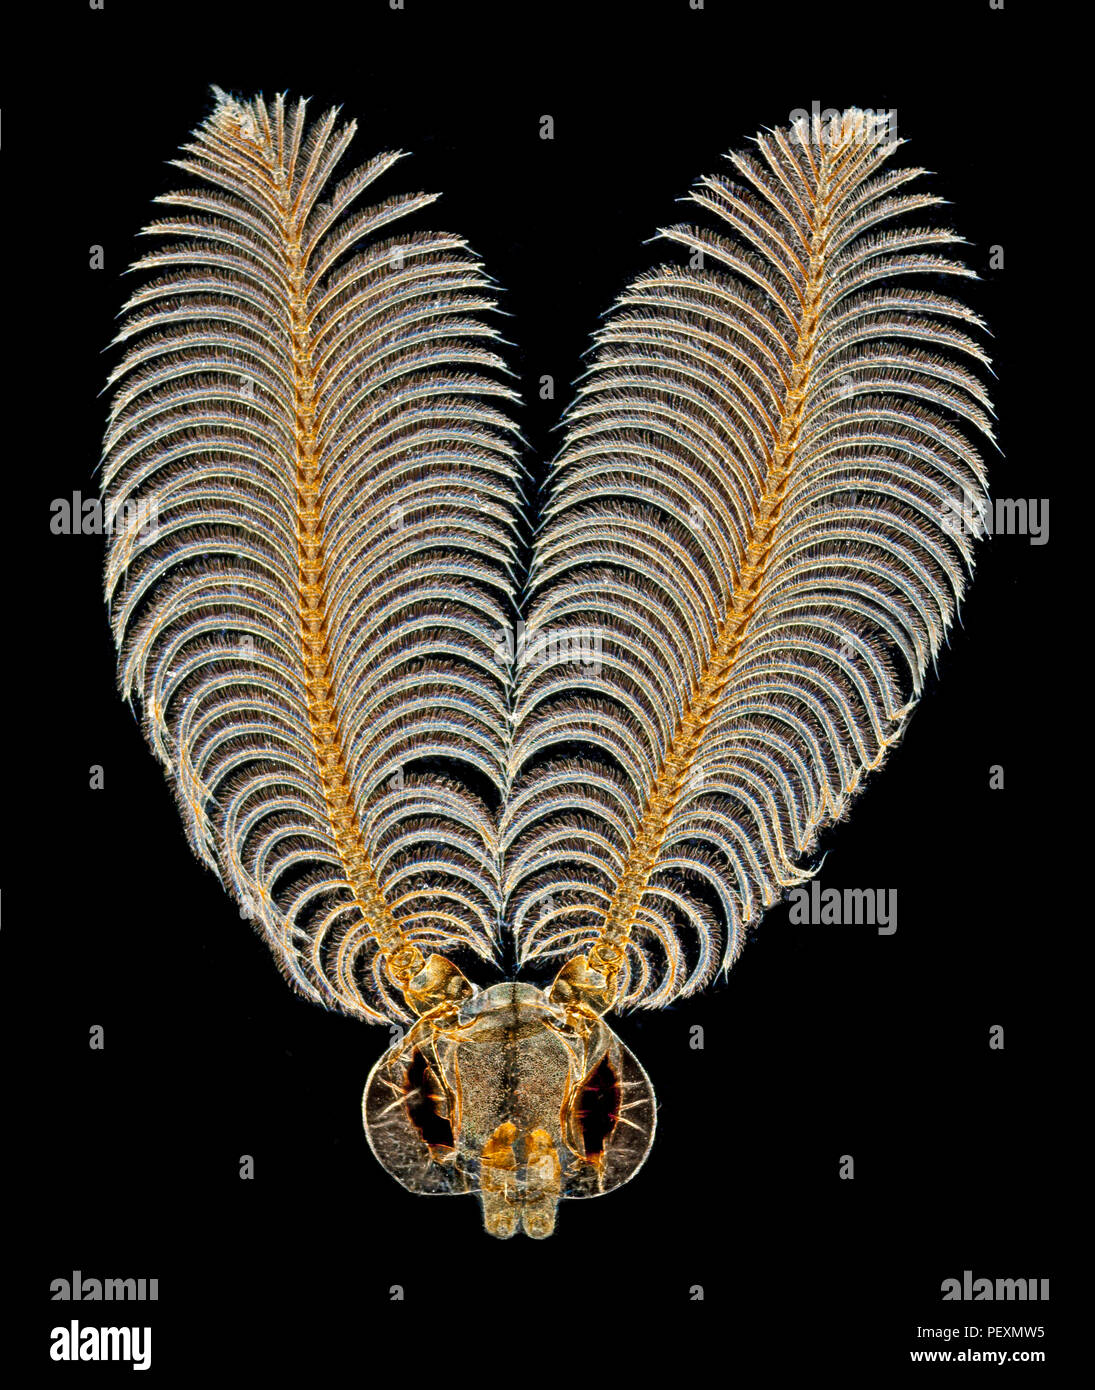 Head & antennae of adult male North American gypsy moth, Lymantria dispar dispar, darkfield illumination Stock Photo